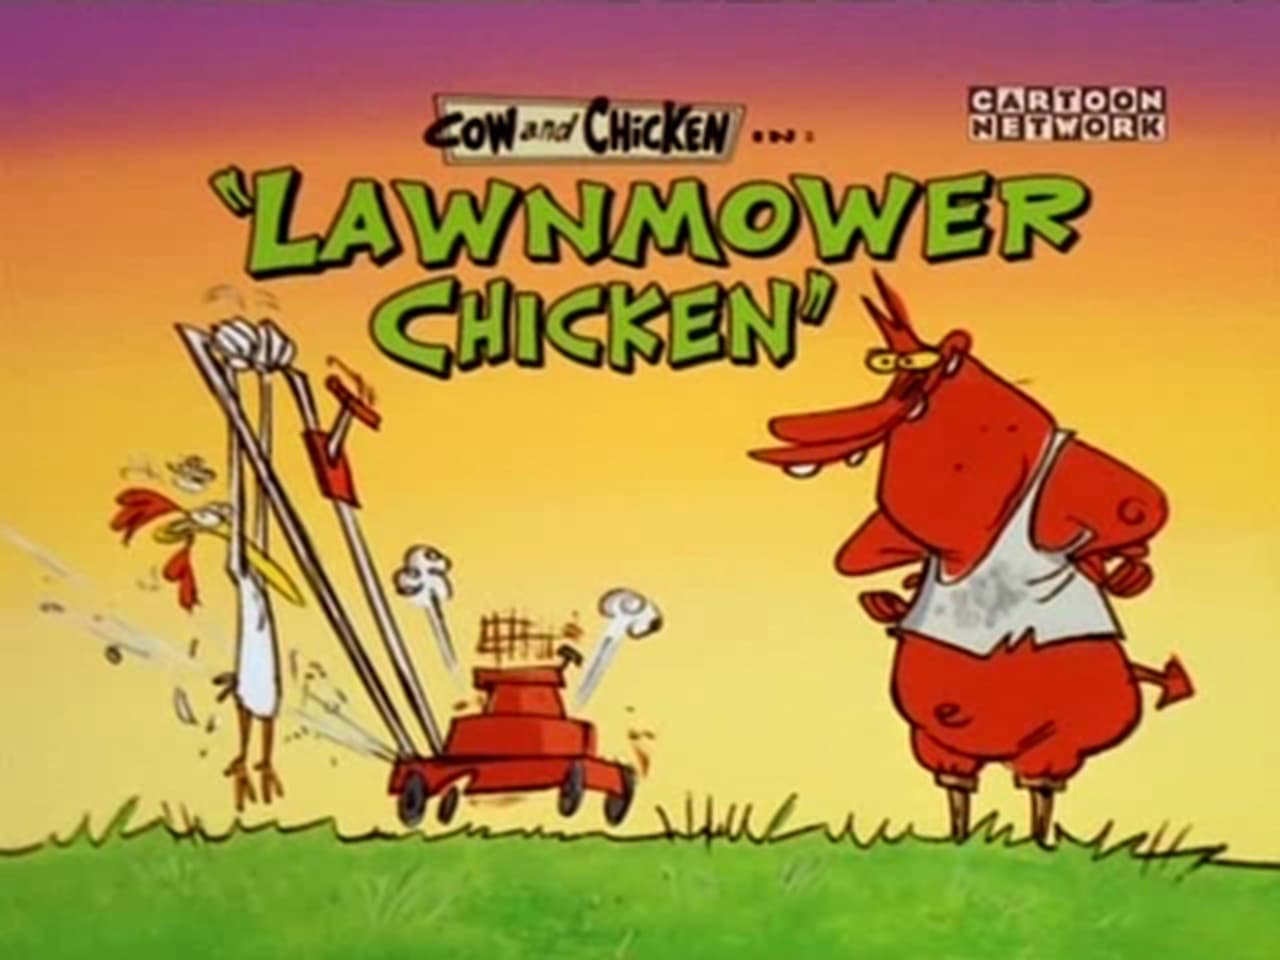 Cow and Chicken - Season 1 Episode 21 : Lawnmower Chicken